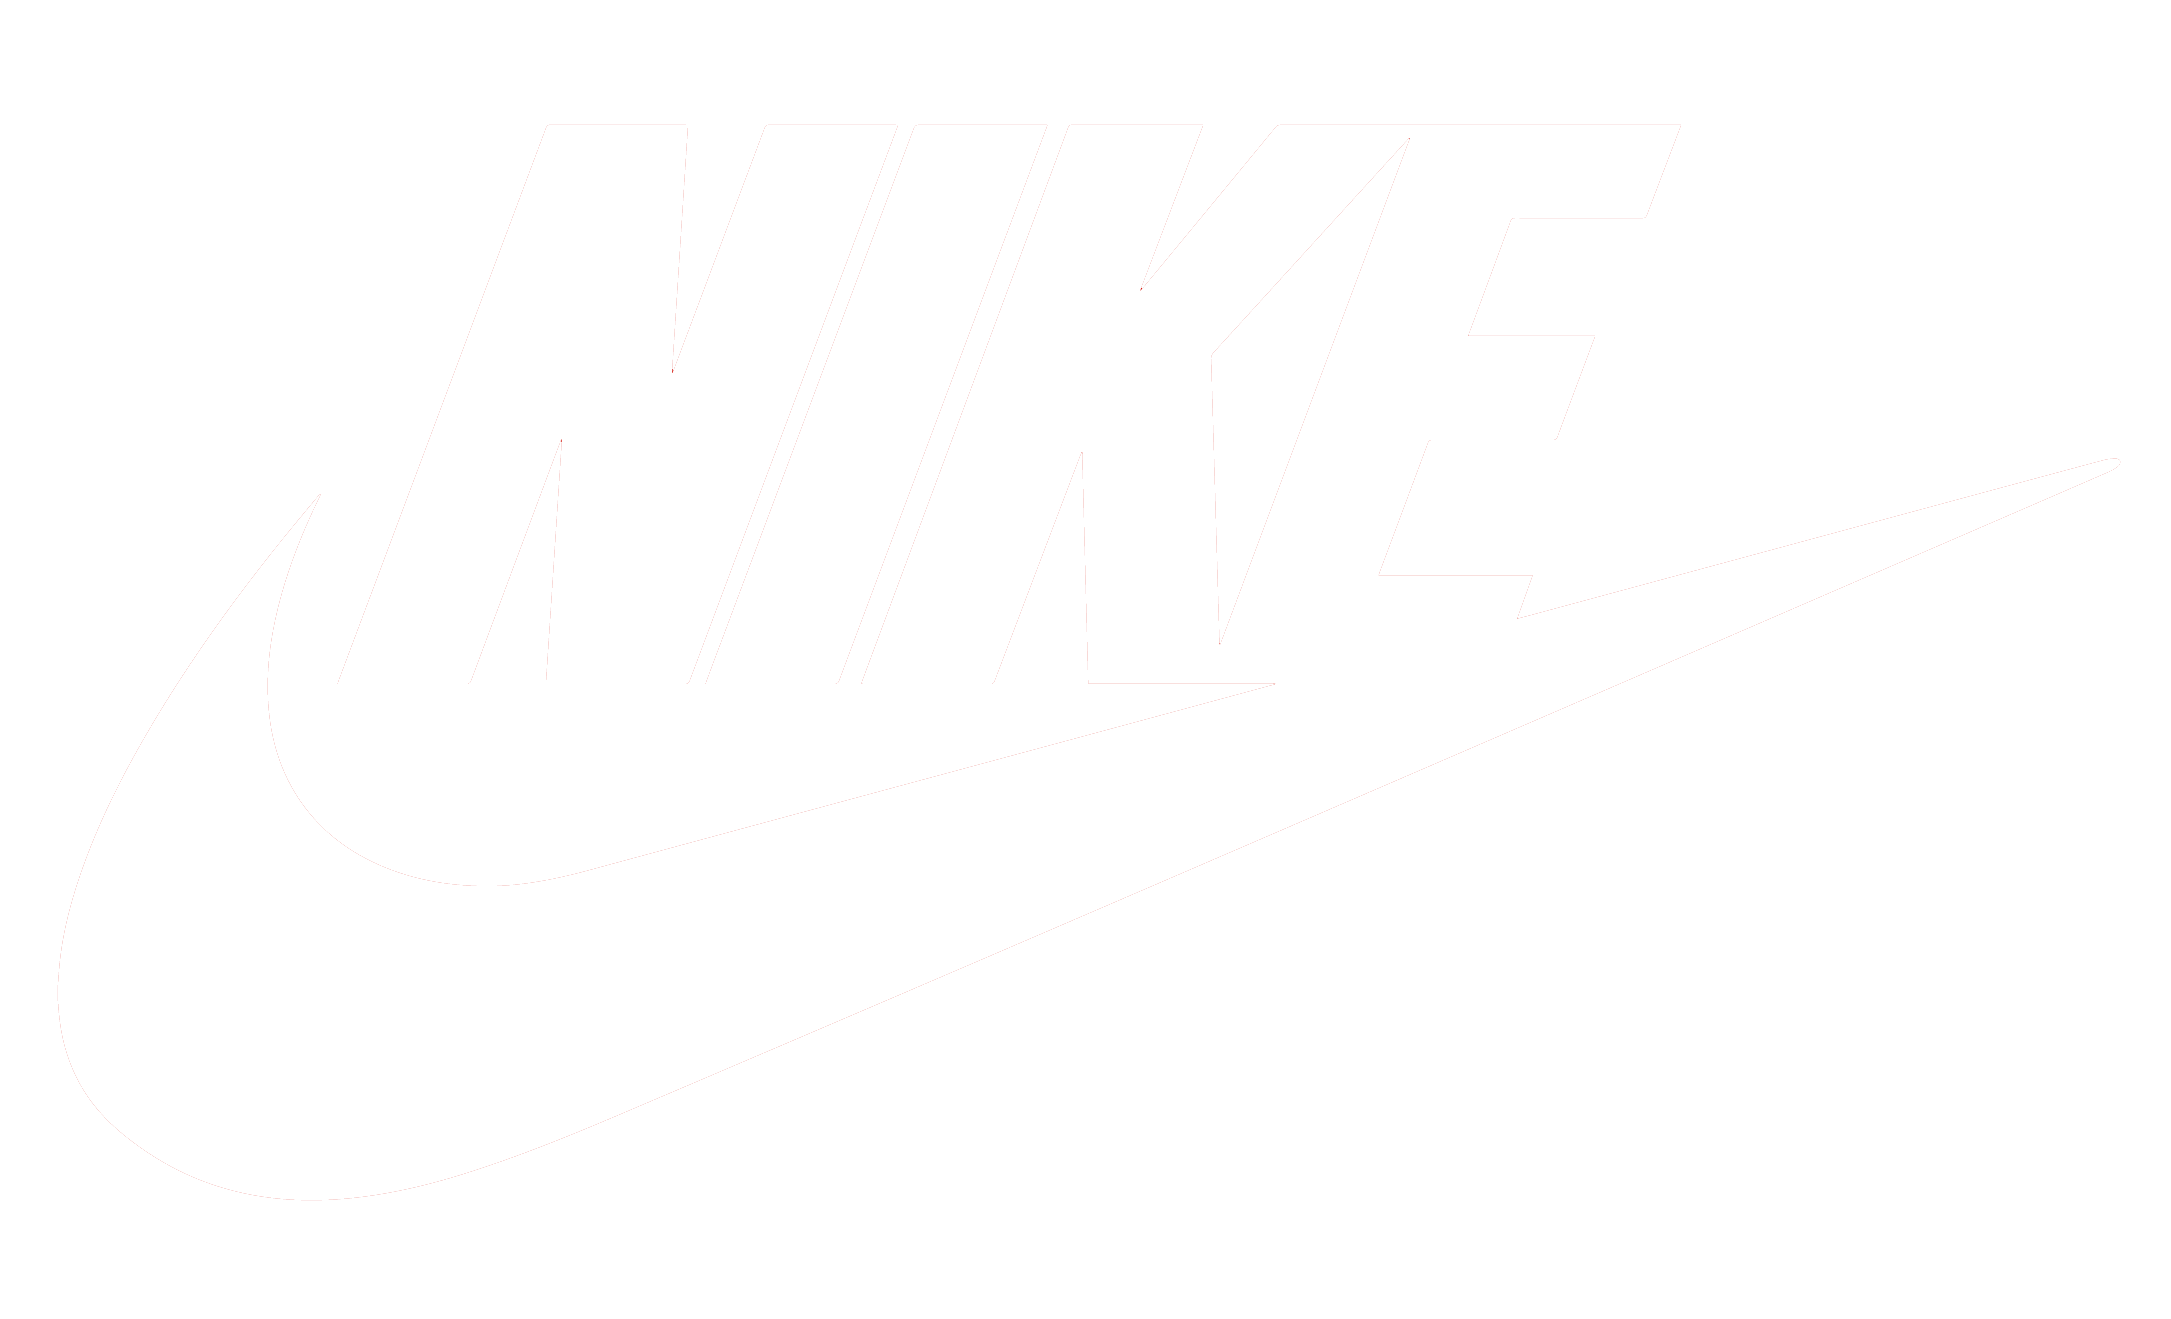 Nike-1